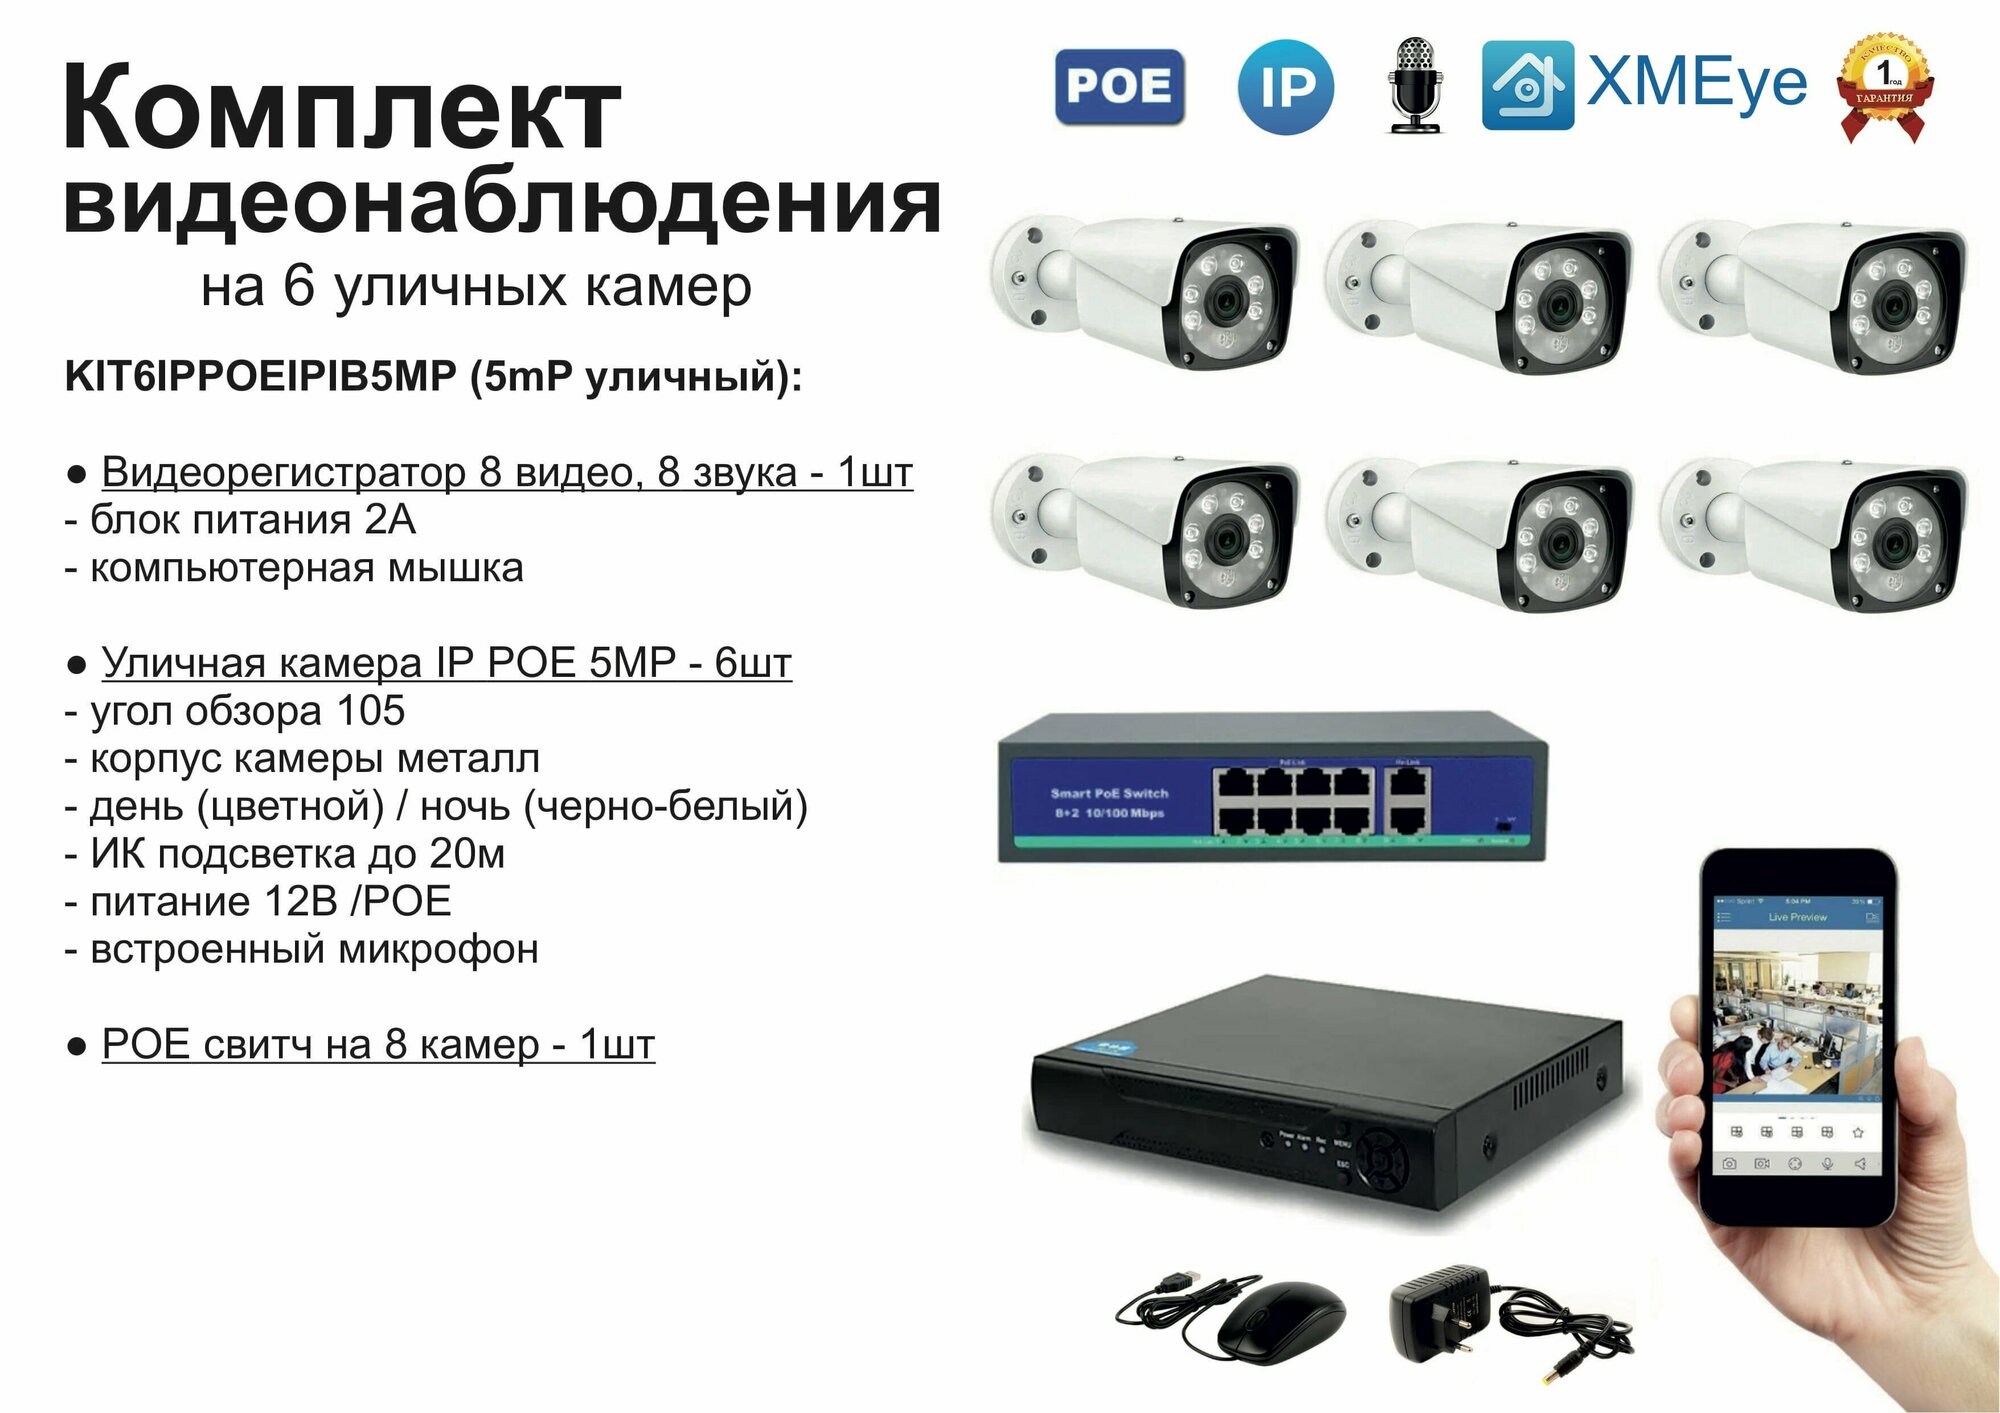 Комплект видеонаблюдения IP POE на 6 камер. Уличный, 5мП